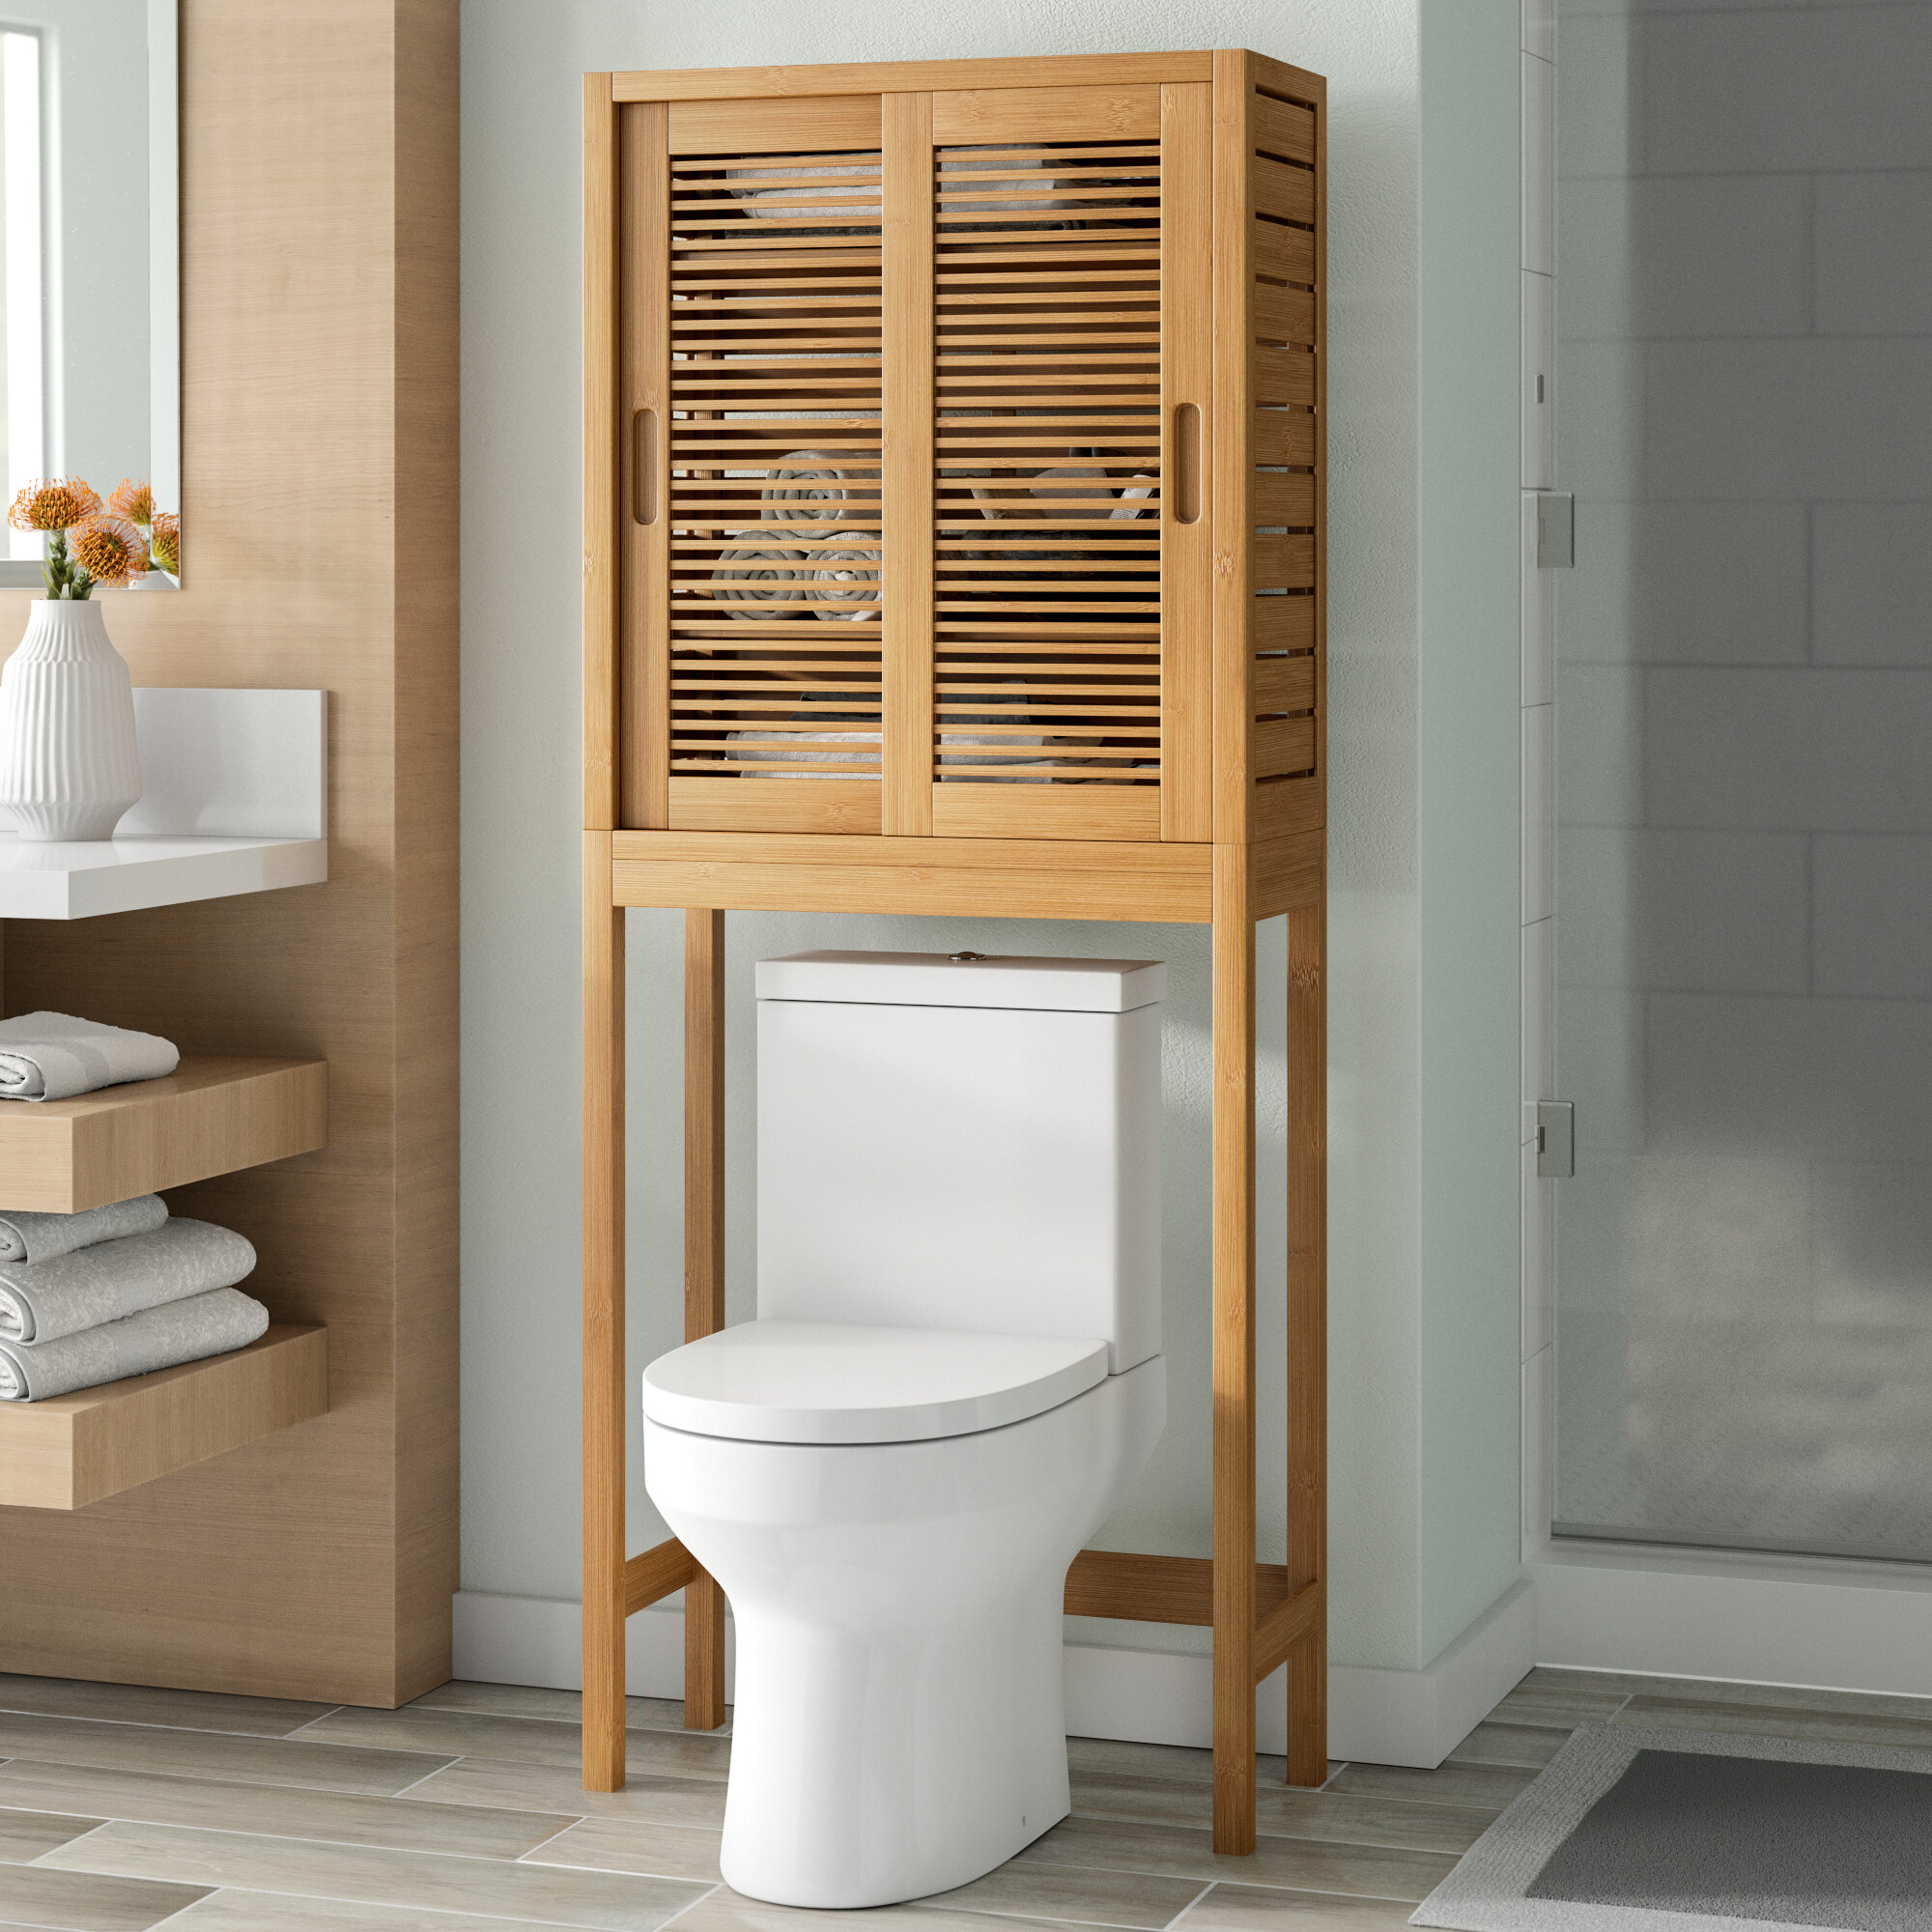 Wonderful wood bathroom space saver Over The Toilet Wooden Storage Wayfair